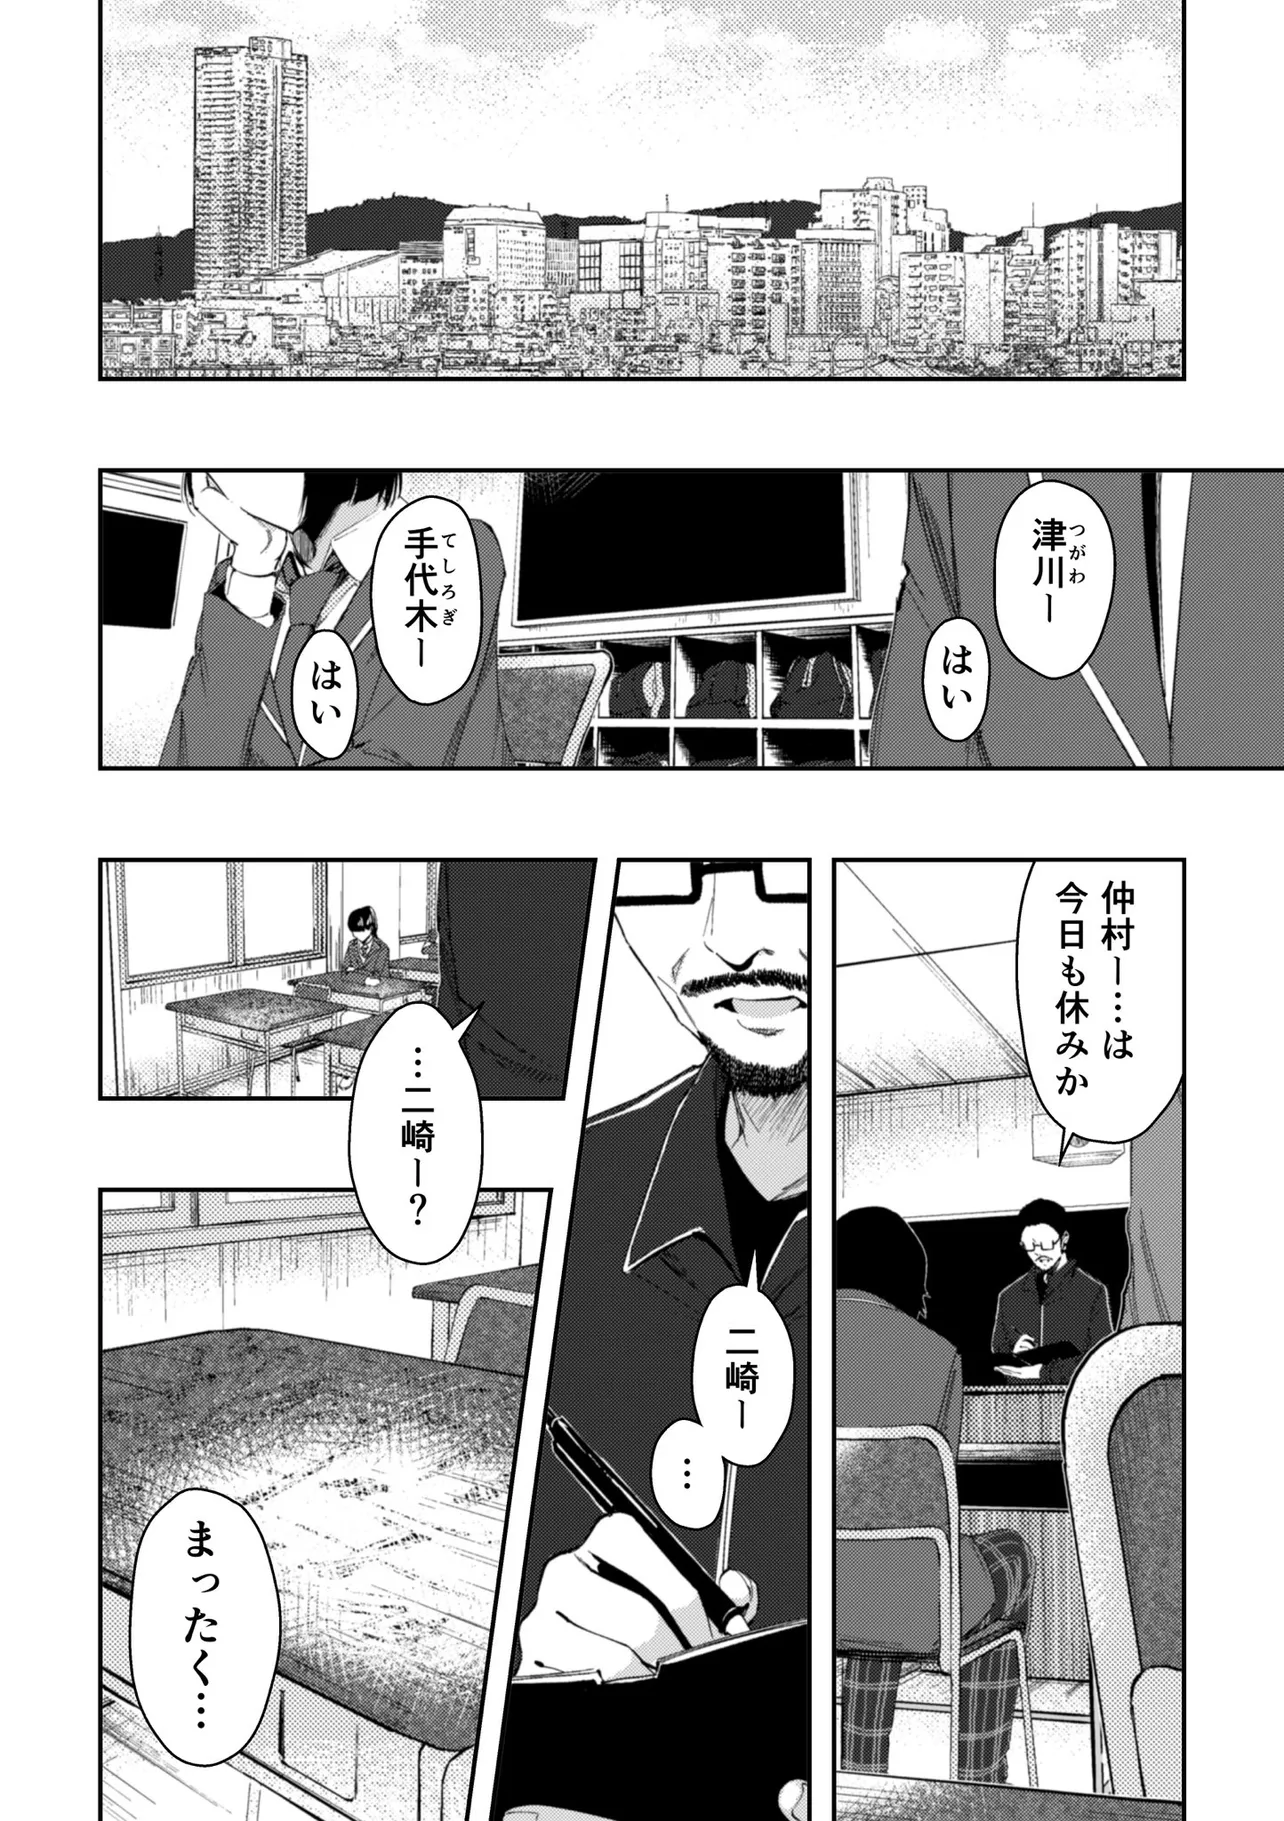 『いじめられっ子のハーフと漫画家を目指す話』(65/71)